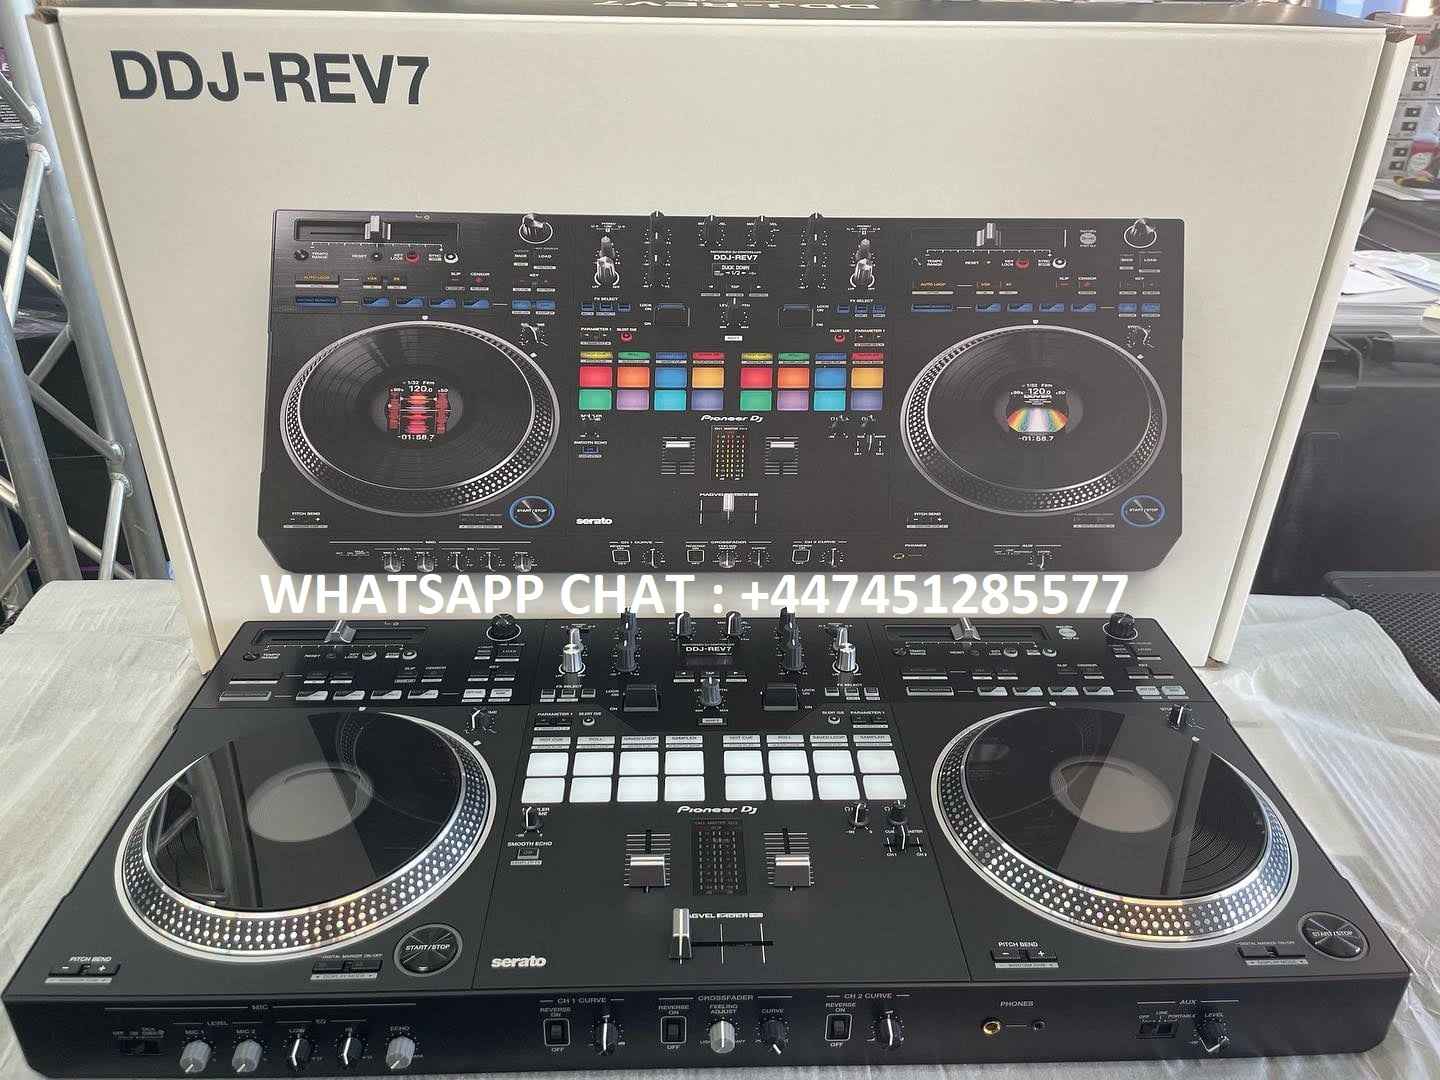 Pioneer XDJ-RX3 DJ System /Pioneer XDJ-XZ DJ System/ Pioneer OPUS-QUAD Bemowo - zdjęcie 5